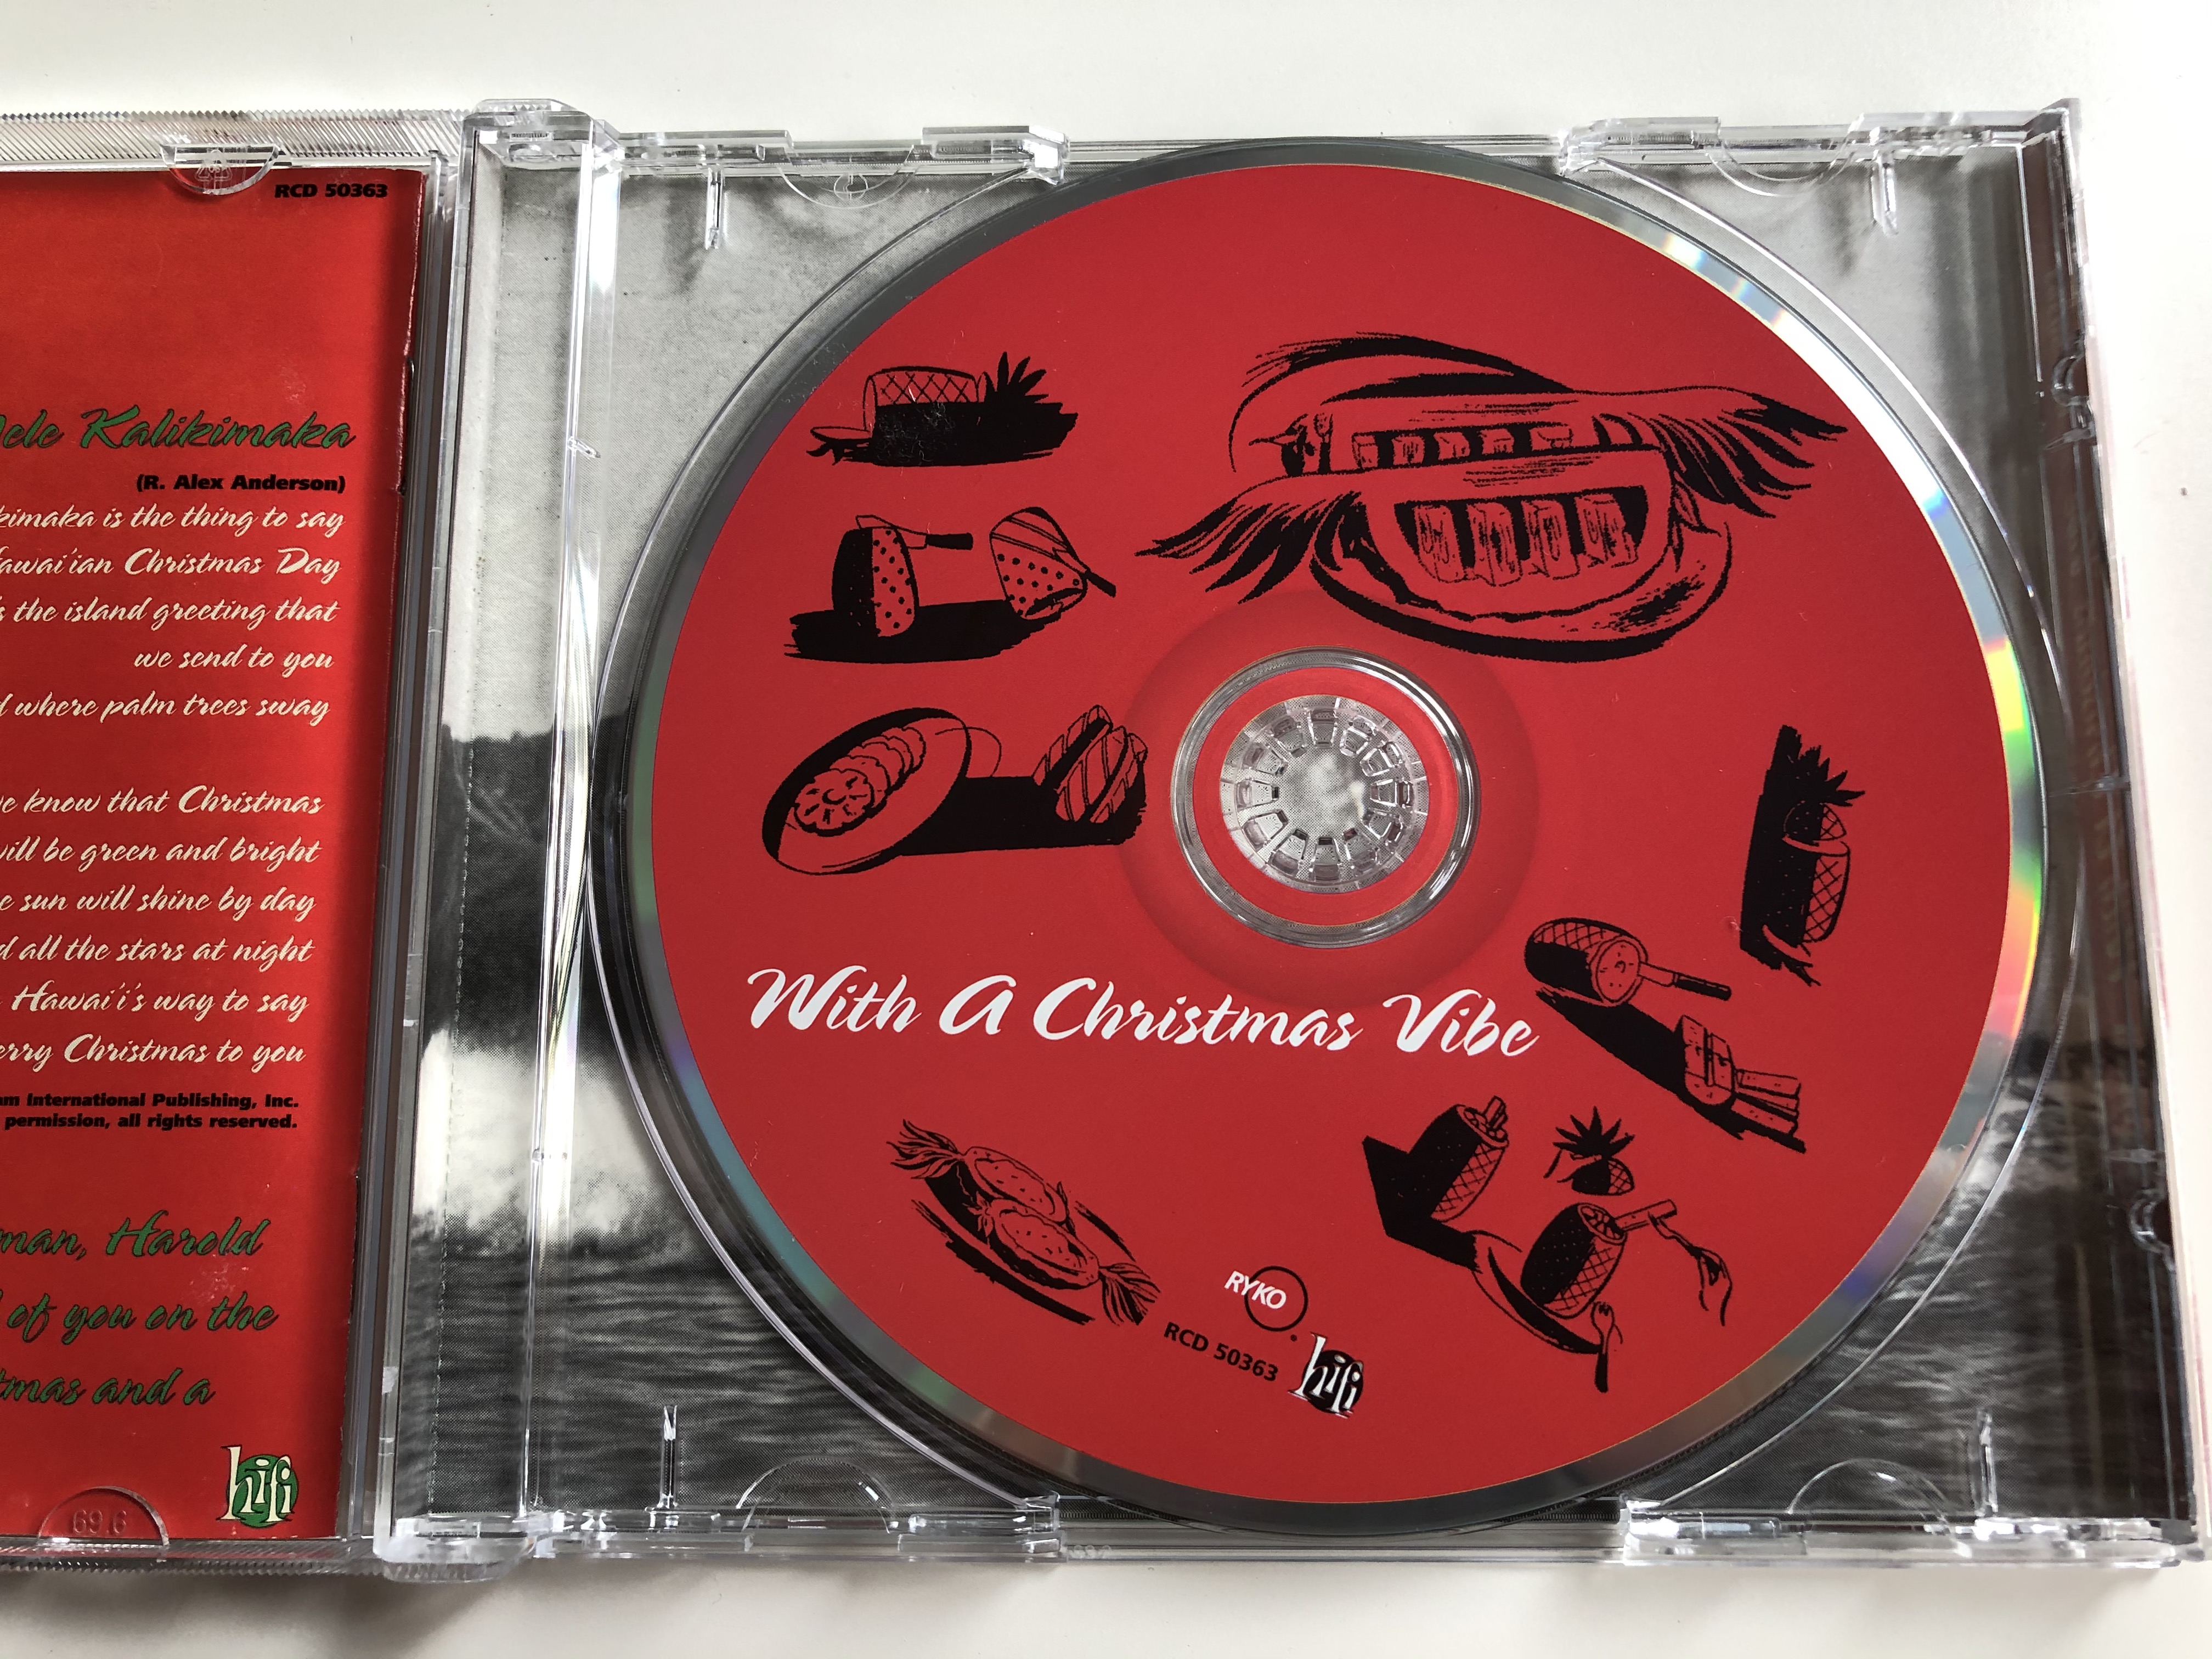 with-a-christmas-vibe-arthur-lyman-rykodisc-audio-cd-1996-rcd-50363-6-.jpg